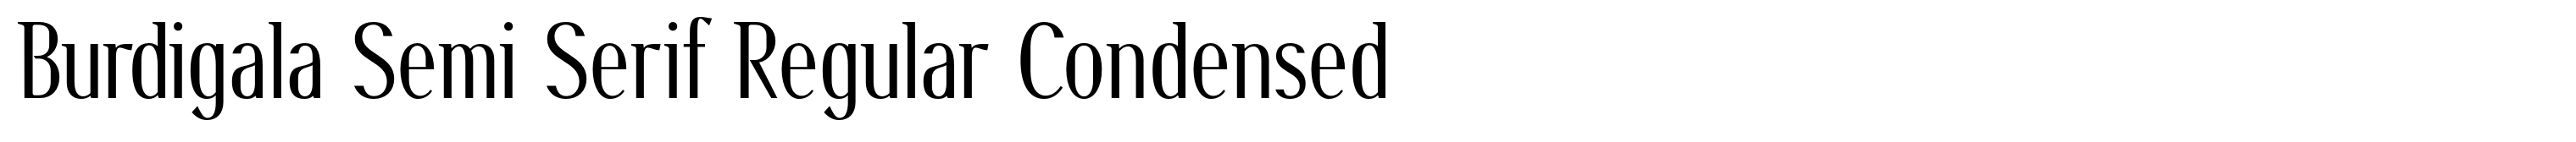 Burdigala Semi Serif Regular Condensed